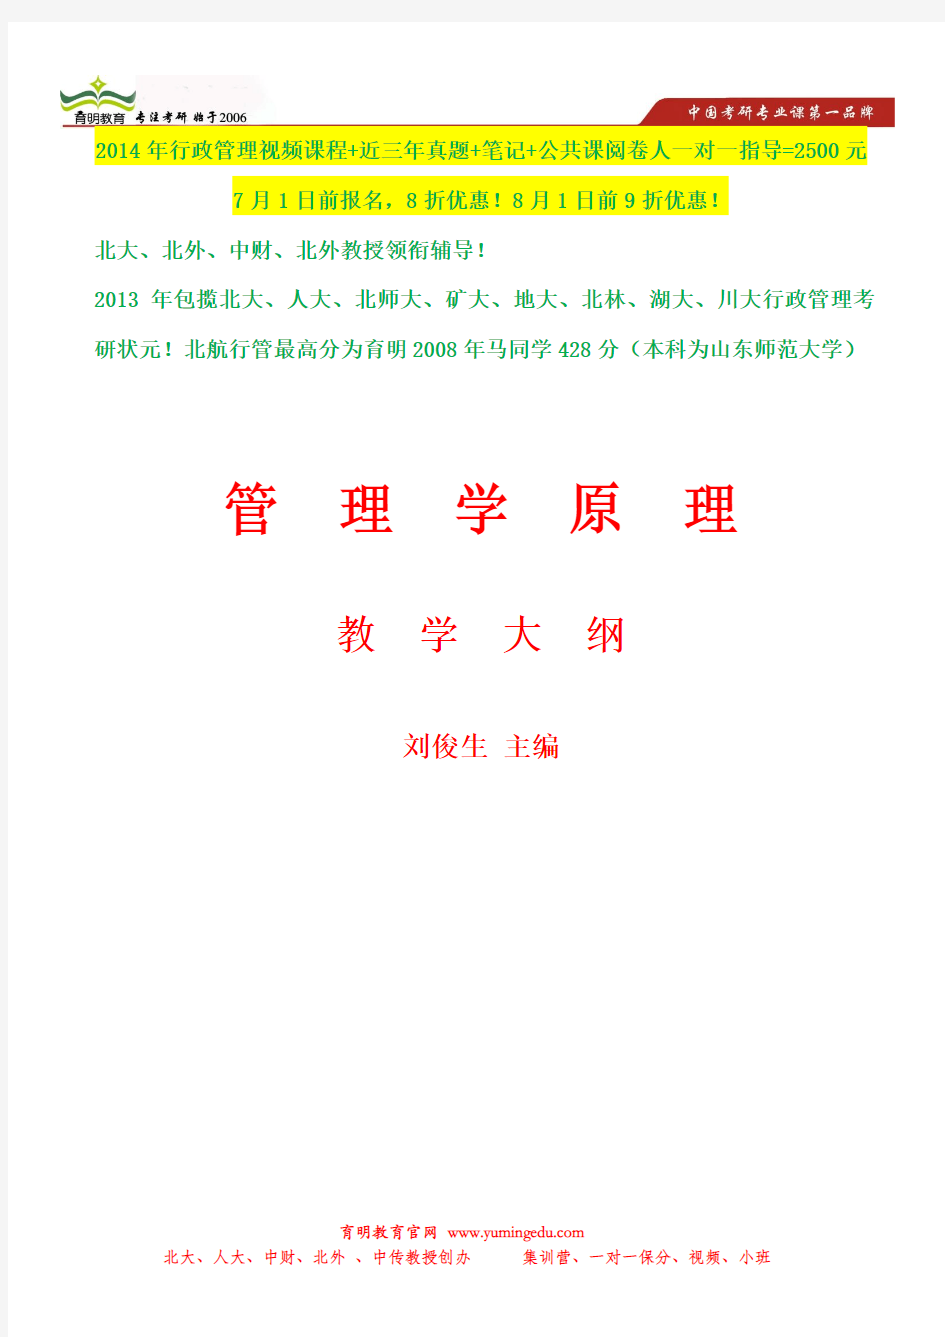 2014年中国政法大学行政管理考研参考书及状元笔记,考研参考书笔记